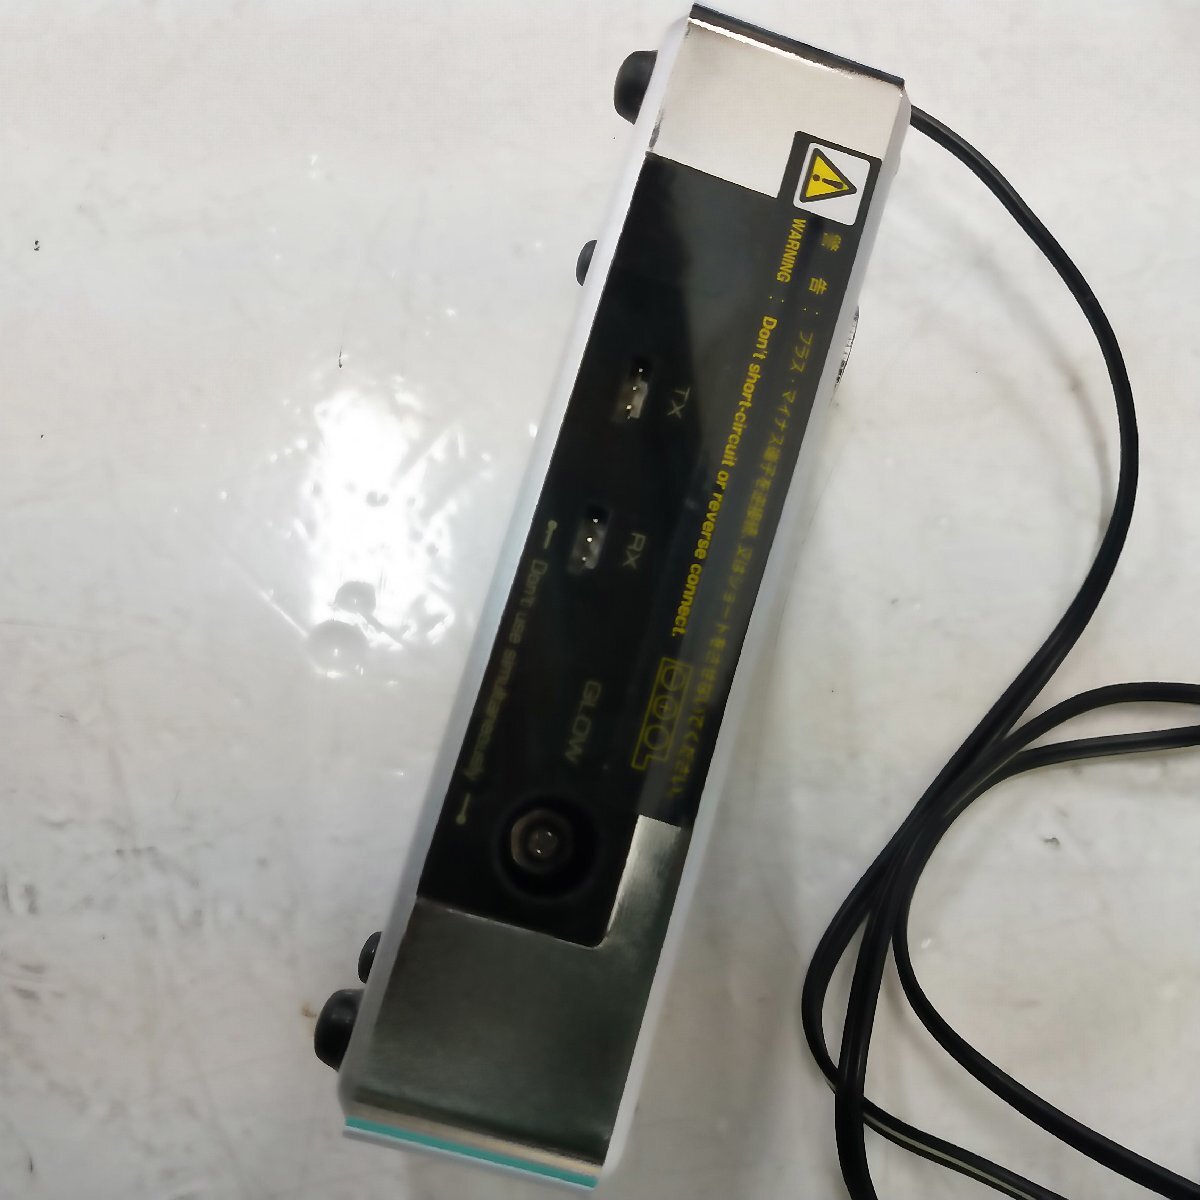 s001 I2 Futaba フタバ バッテリーチャージャー CR-2000 充電器 ラジコン 中古 良品_画像4